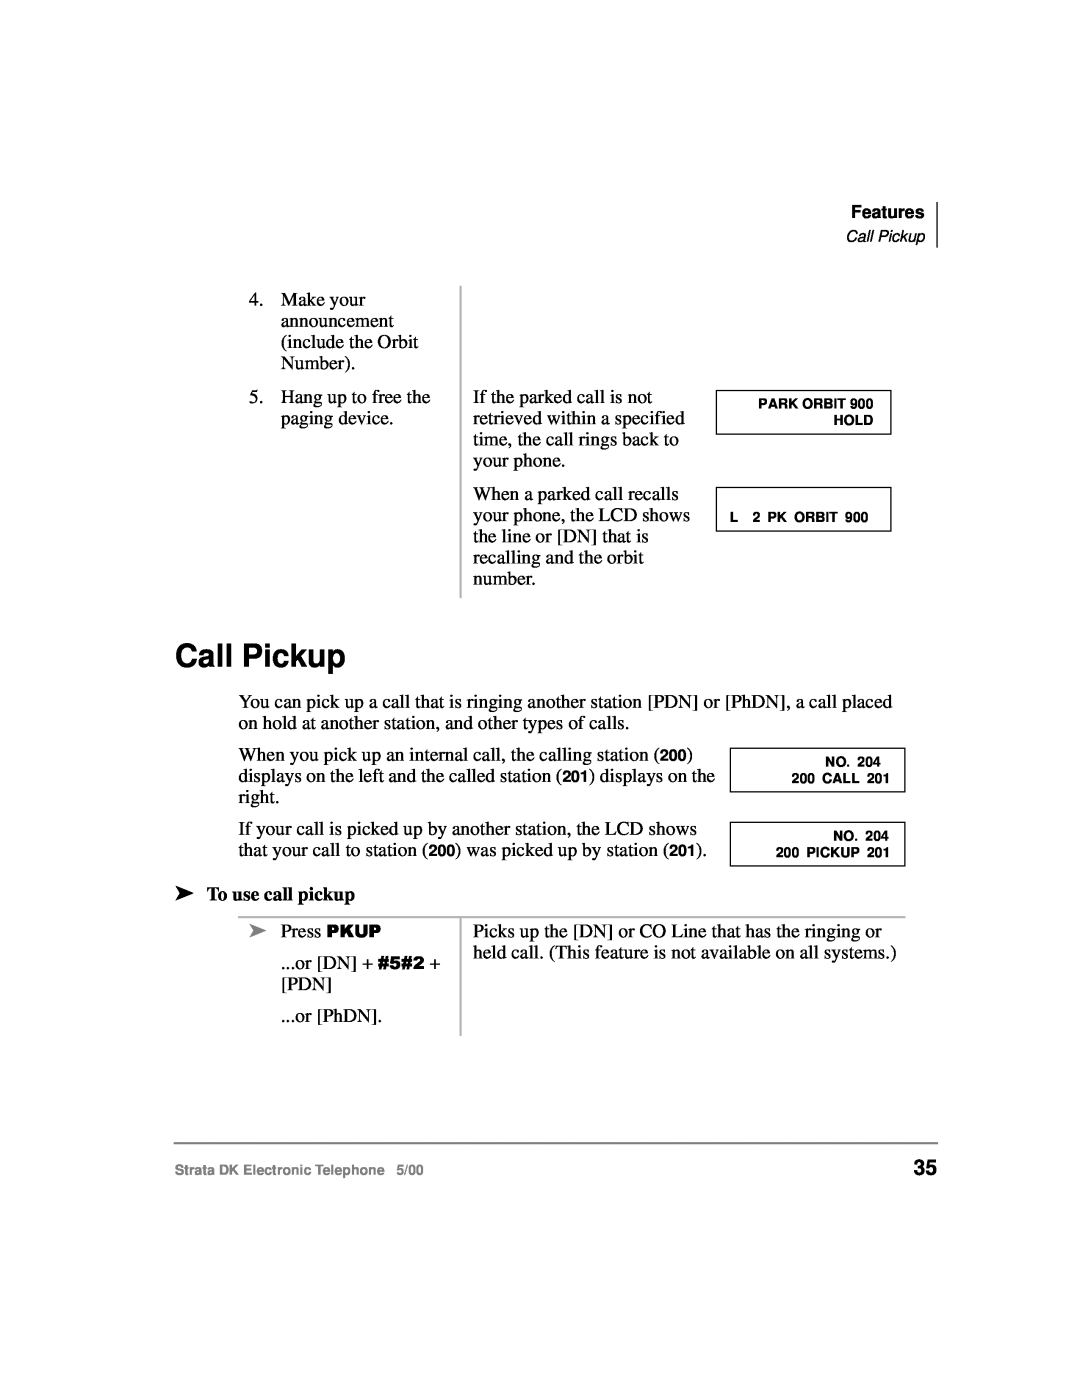 Toshiba Strata DK manual Call Pickup, To use call pickup 